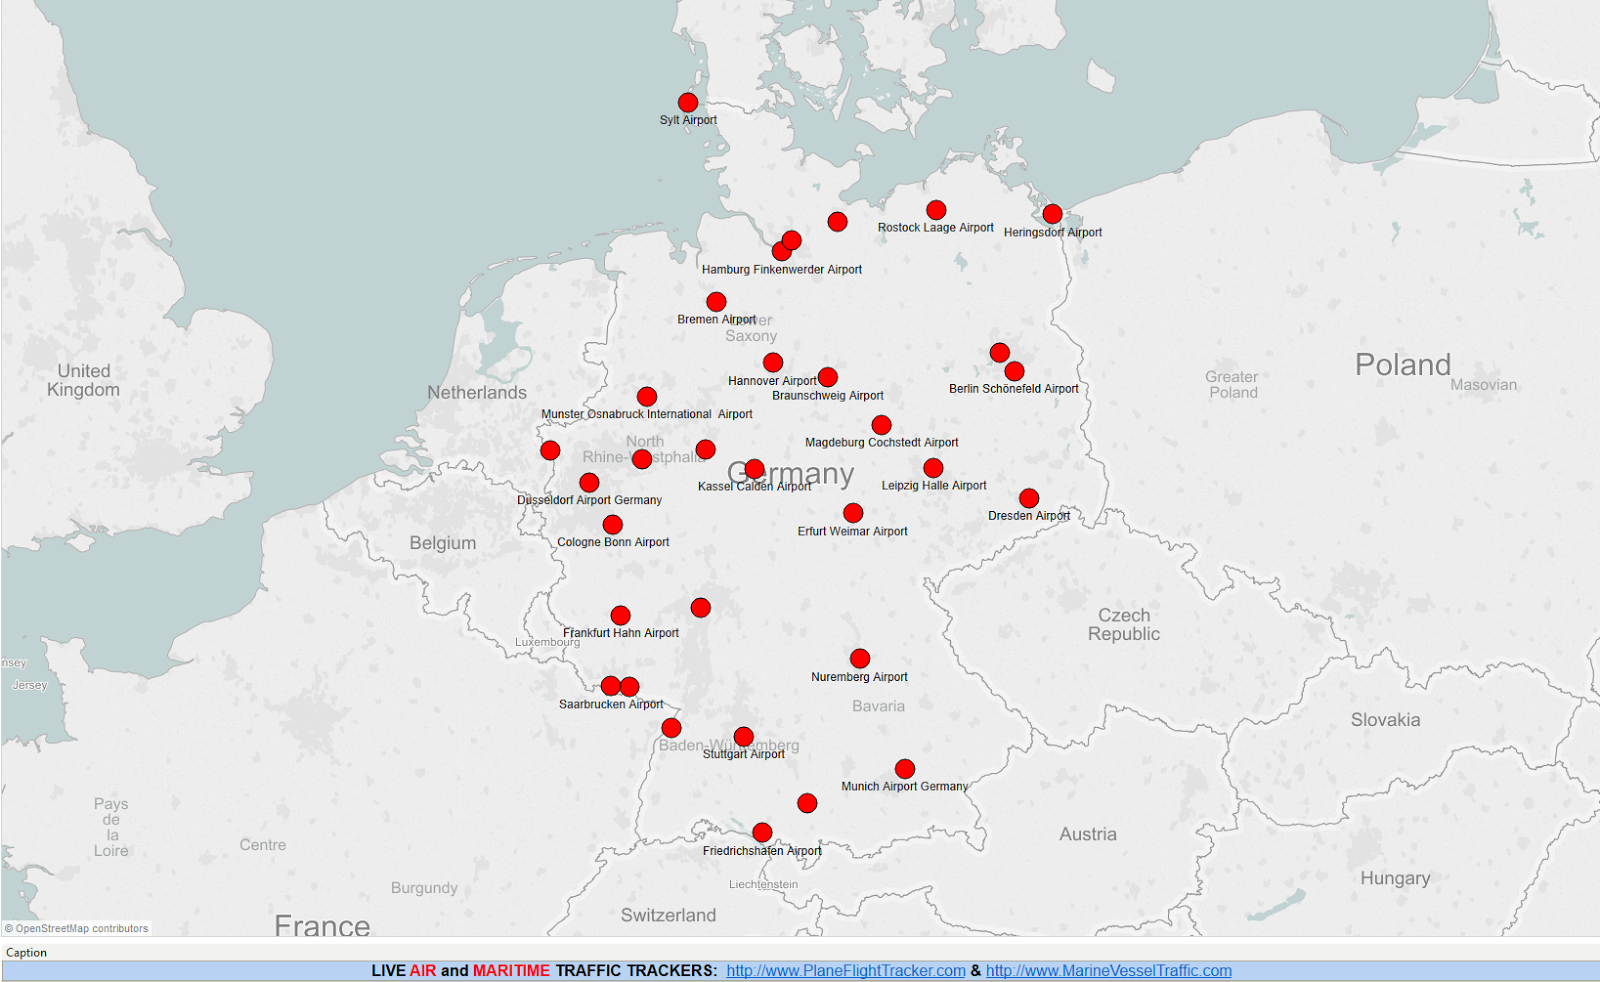 Международные немецкие аэропорты: описание, расположение, маршруты